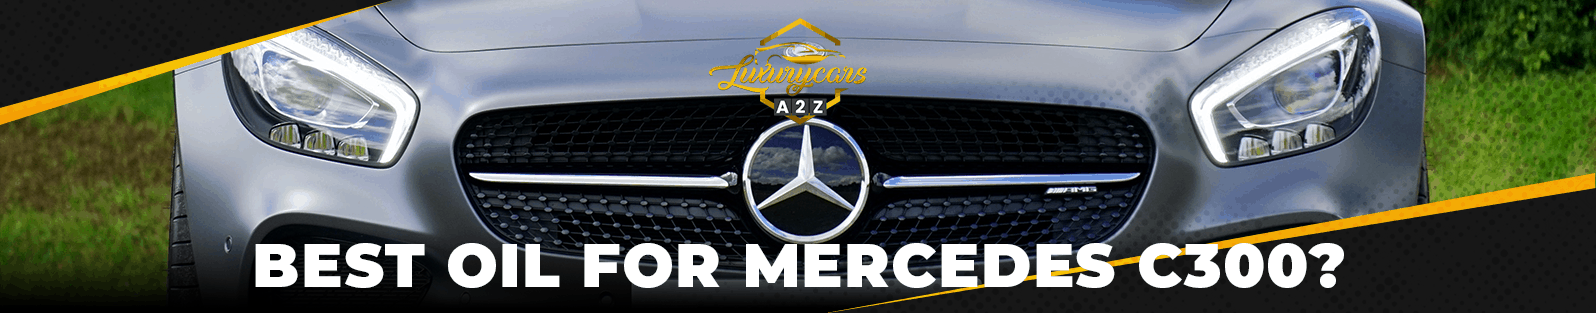 La meilleure huile pour Mercedes C300